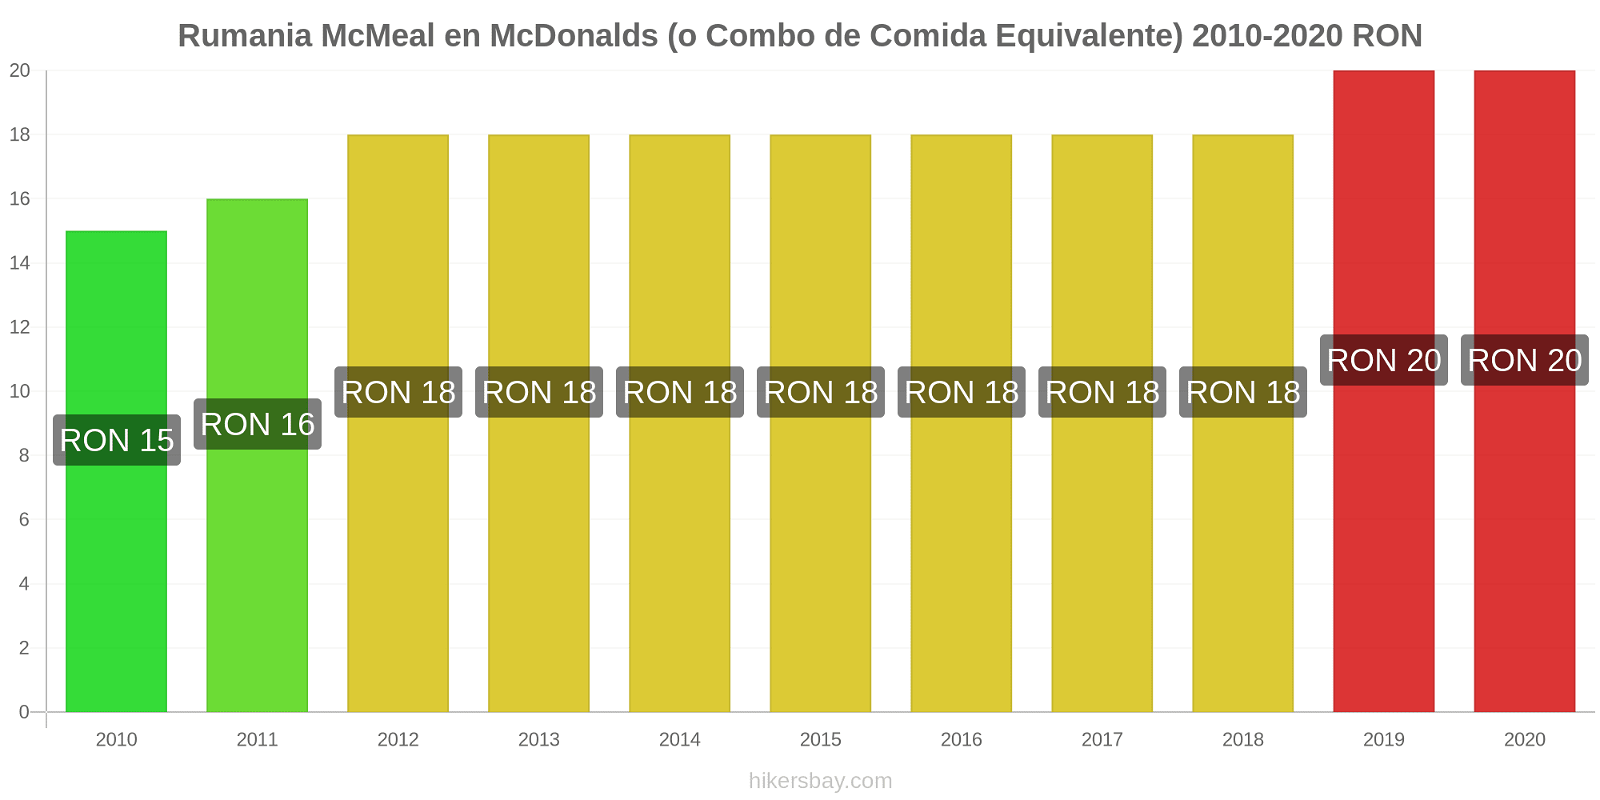 Rumania cambios de precios McMeal en McDonalds (o menú equivalente) hikersbay.com